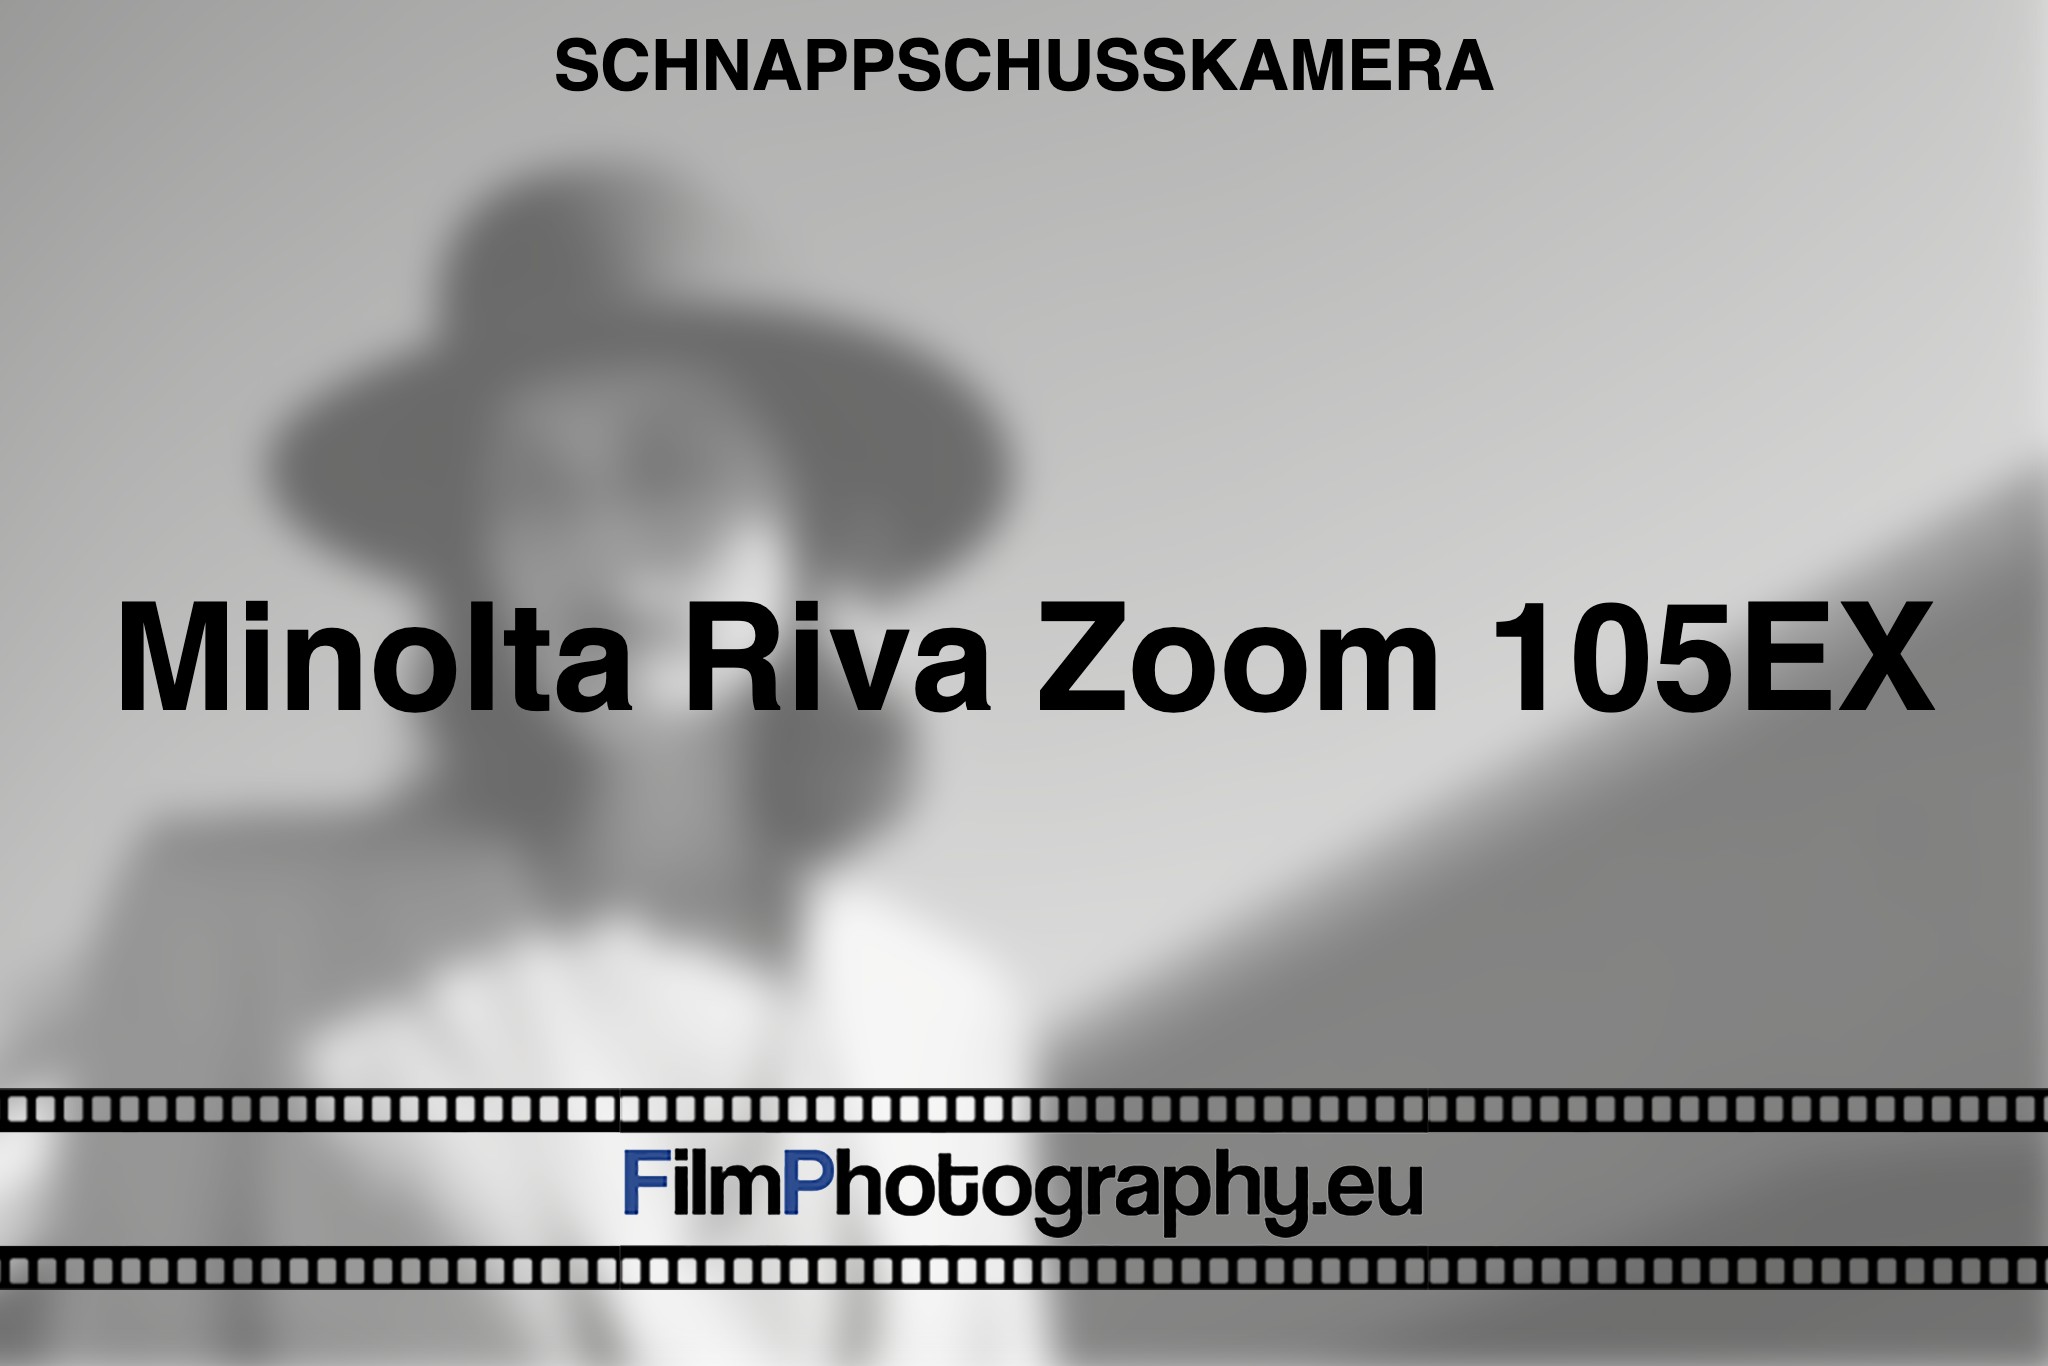 minolta-riva-zoom-105ex-schnappschusskamera-bnv